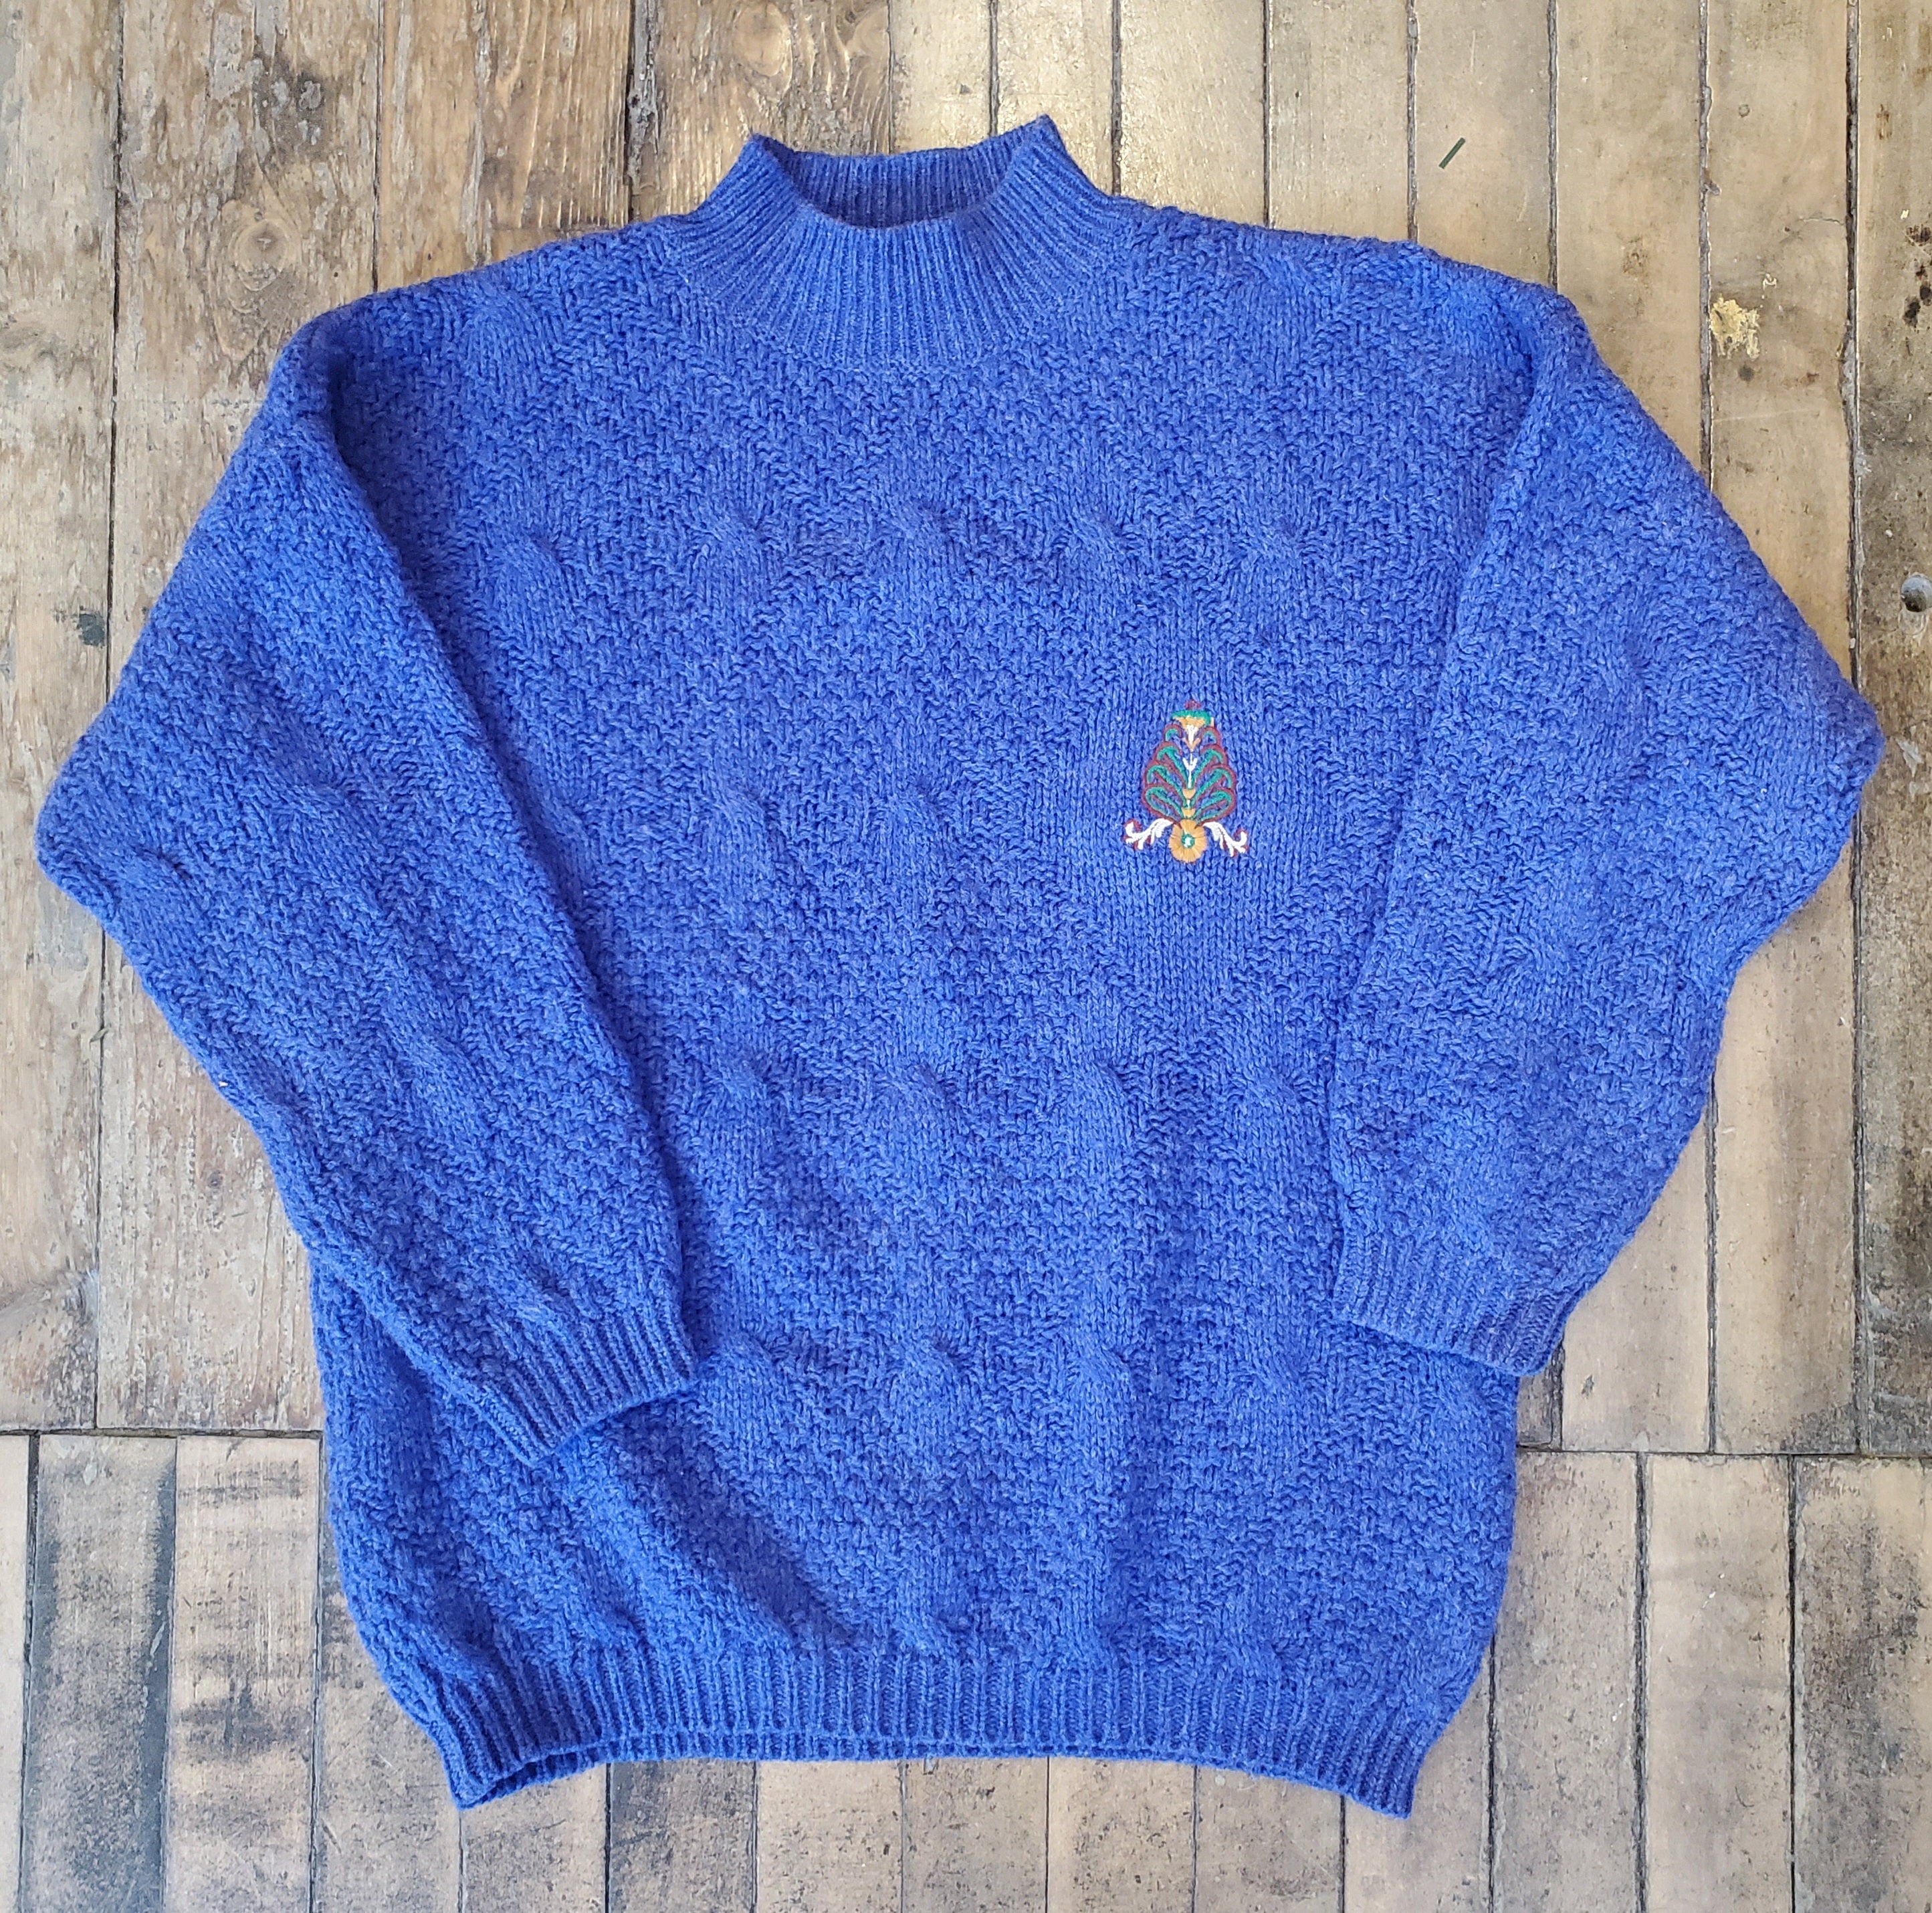 Benetton Sweater